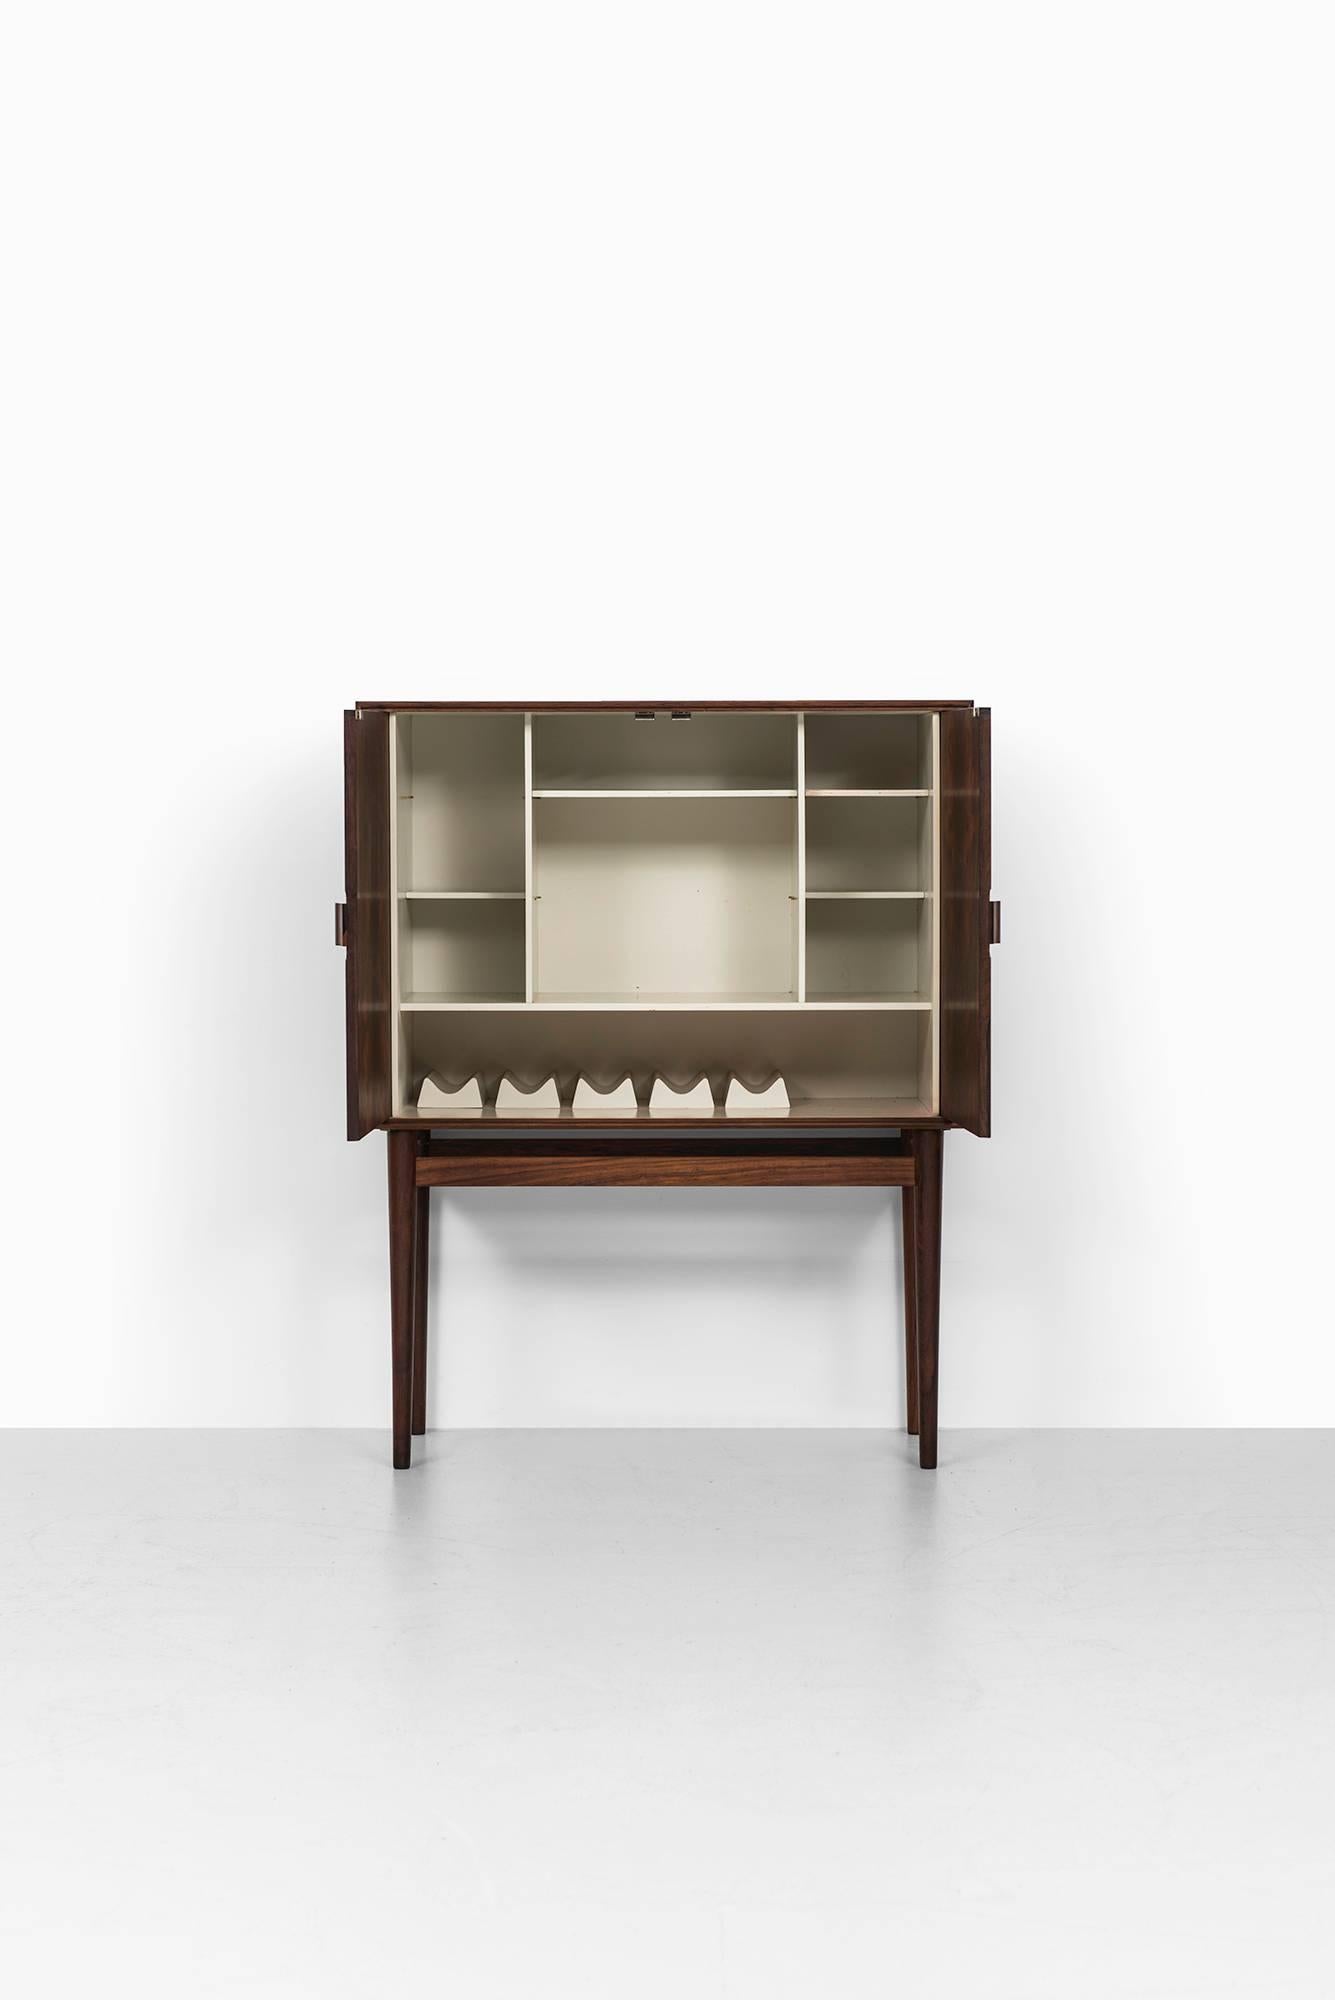 Rare bar cabinet model 63 designed by Helge Vestergaard Jensen. Produced by Jason Møbler in Denmark.